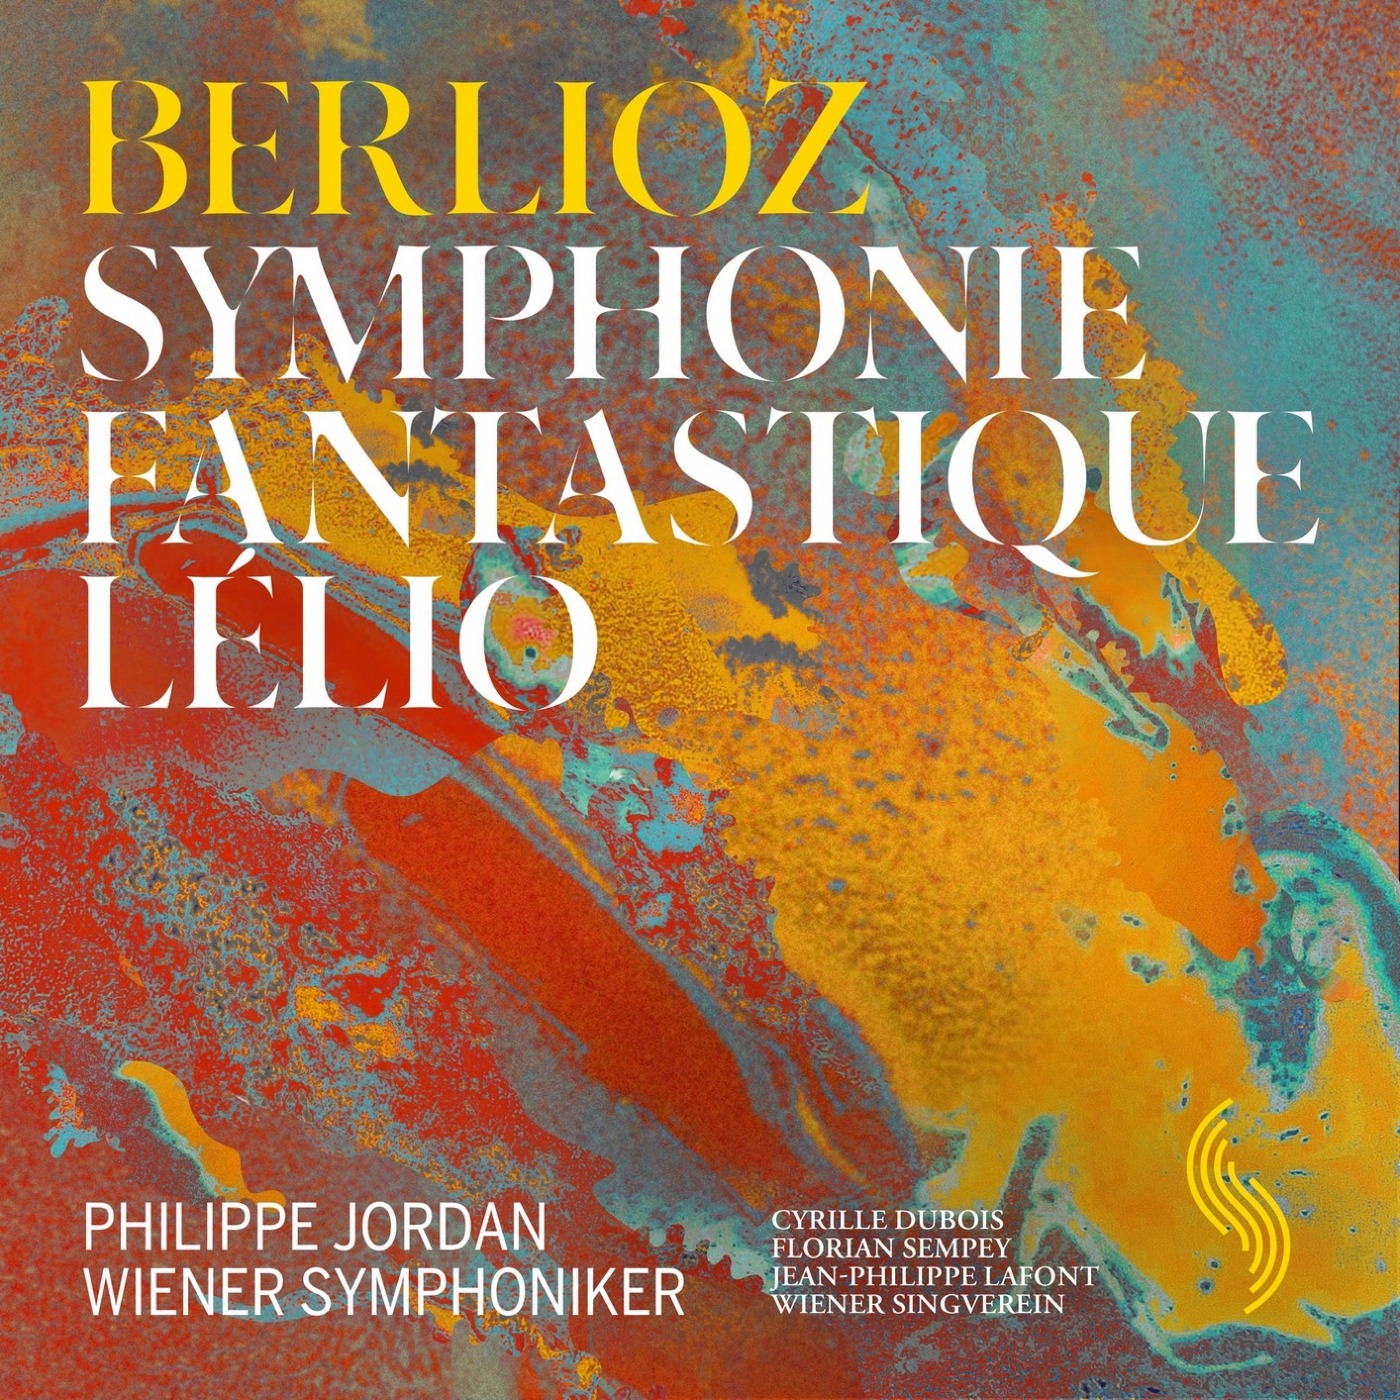 Philippe Jordan, Cyrille Dubois, Wiener Symphoniker - Berlioz: Symphonie fantastique & Lelio (2019) [FLAC 24bit/96kHz]